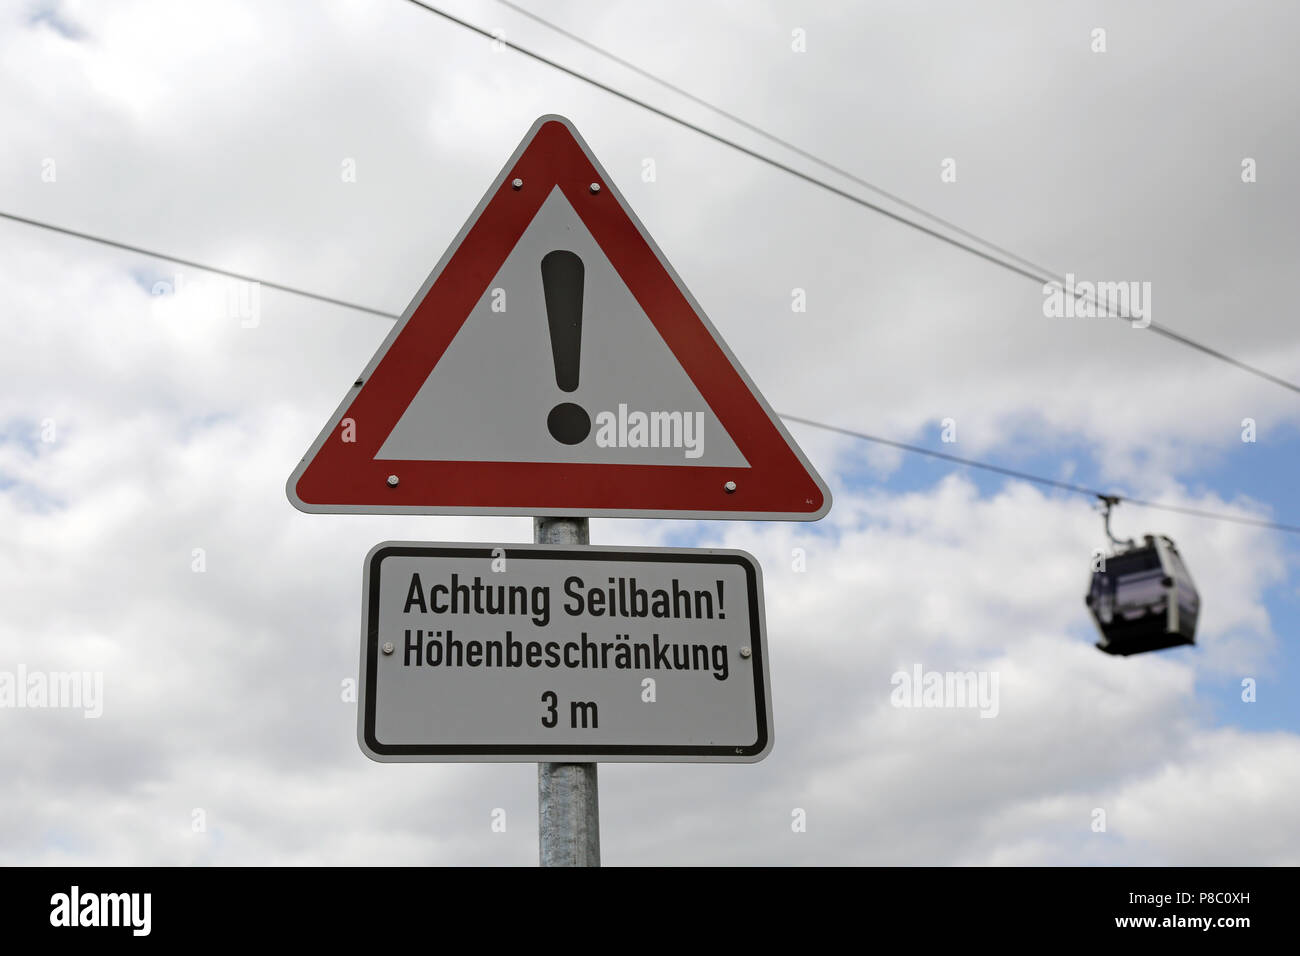 Berlin, Deutschland, unterzeichnen - Achtung kabel Auto - Vor einer Seilbahn Gondel Stockfoto